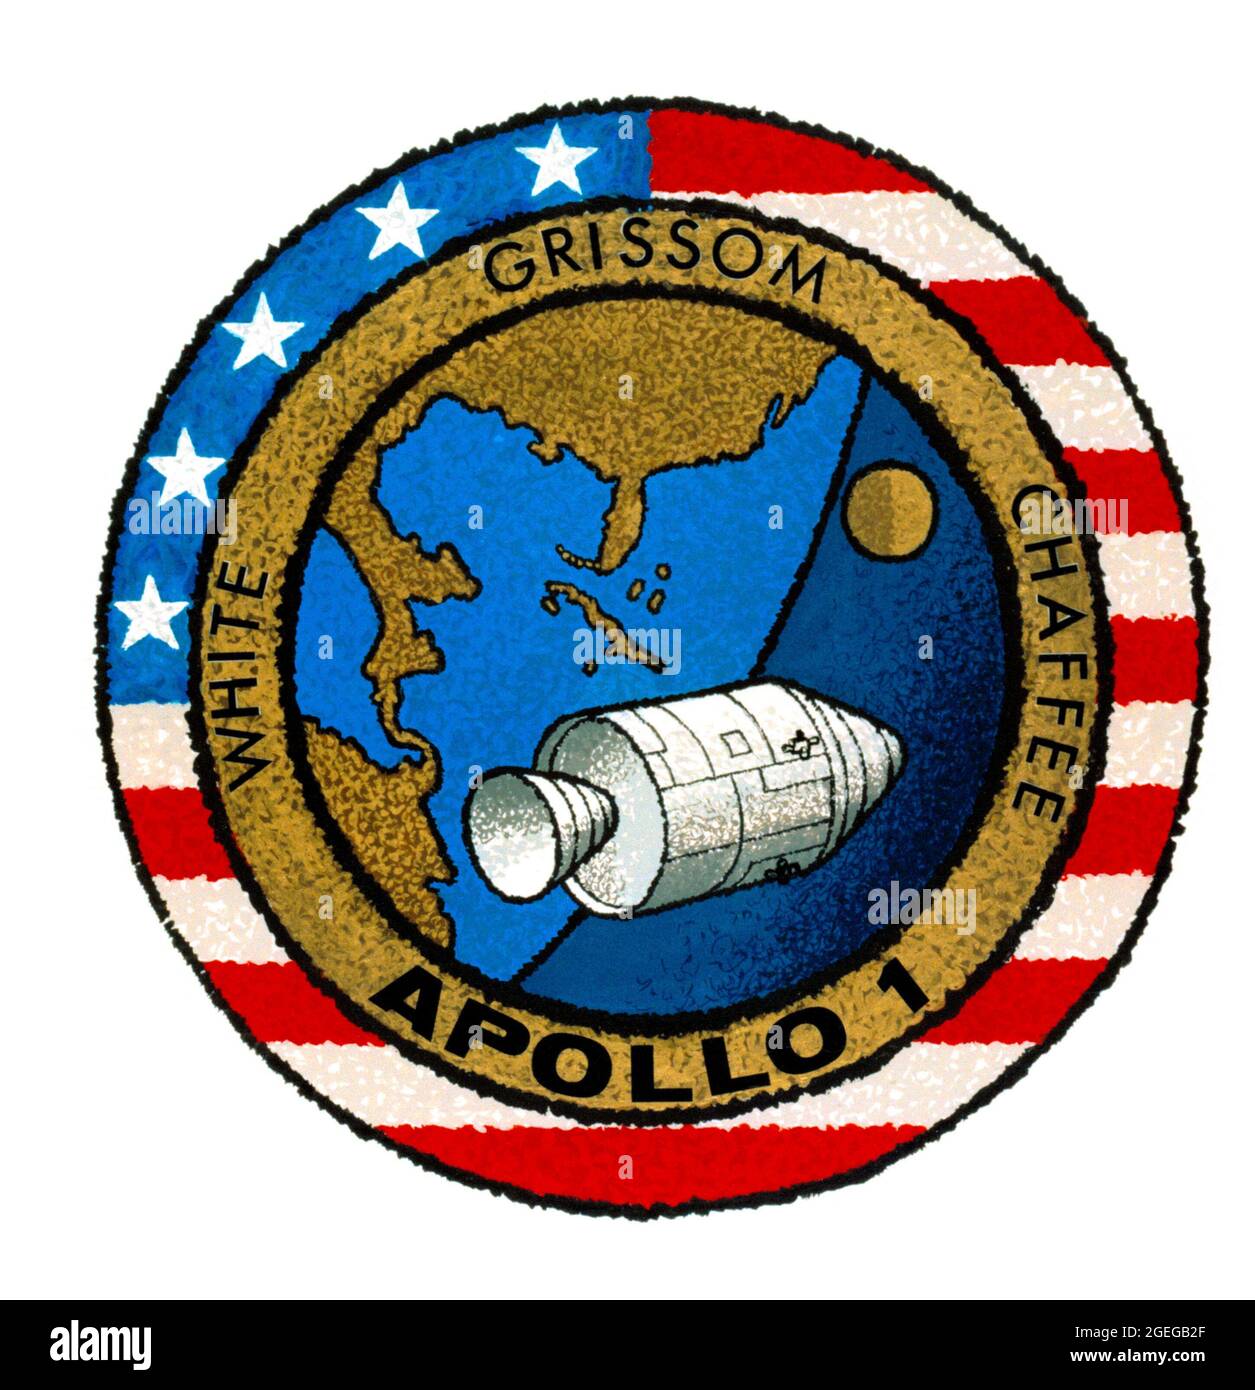 (1966) --- il s'agit de l'insigne de la mission Apollo 1 de la National Aeronautics and Space Administration (NASA), le premier vol Apollo habité. Les membres de l'équipage sont les astronautes Virgile I. Grissom, Edward H. White II et Roger B. Chaffee. La conception de l'insigne de la NASA pour les vols Apollo est réservée aux astronautes et à d'autres fins officielles que l'administrateur de la NASA peut autoriser. La disponibilité publique n'a été approuvée que sous forme d'illustrations par les différents médias d'information. Quand et s'il y a un changement dans cette politique, que nous ne prévoyons pas, elle sera annoncée publiquement. N° DE L'ÉDITEUR Banque D'Images